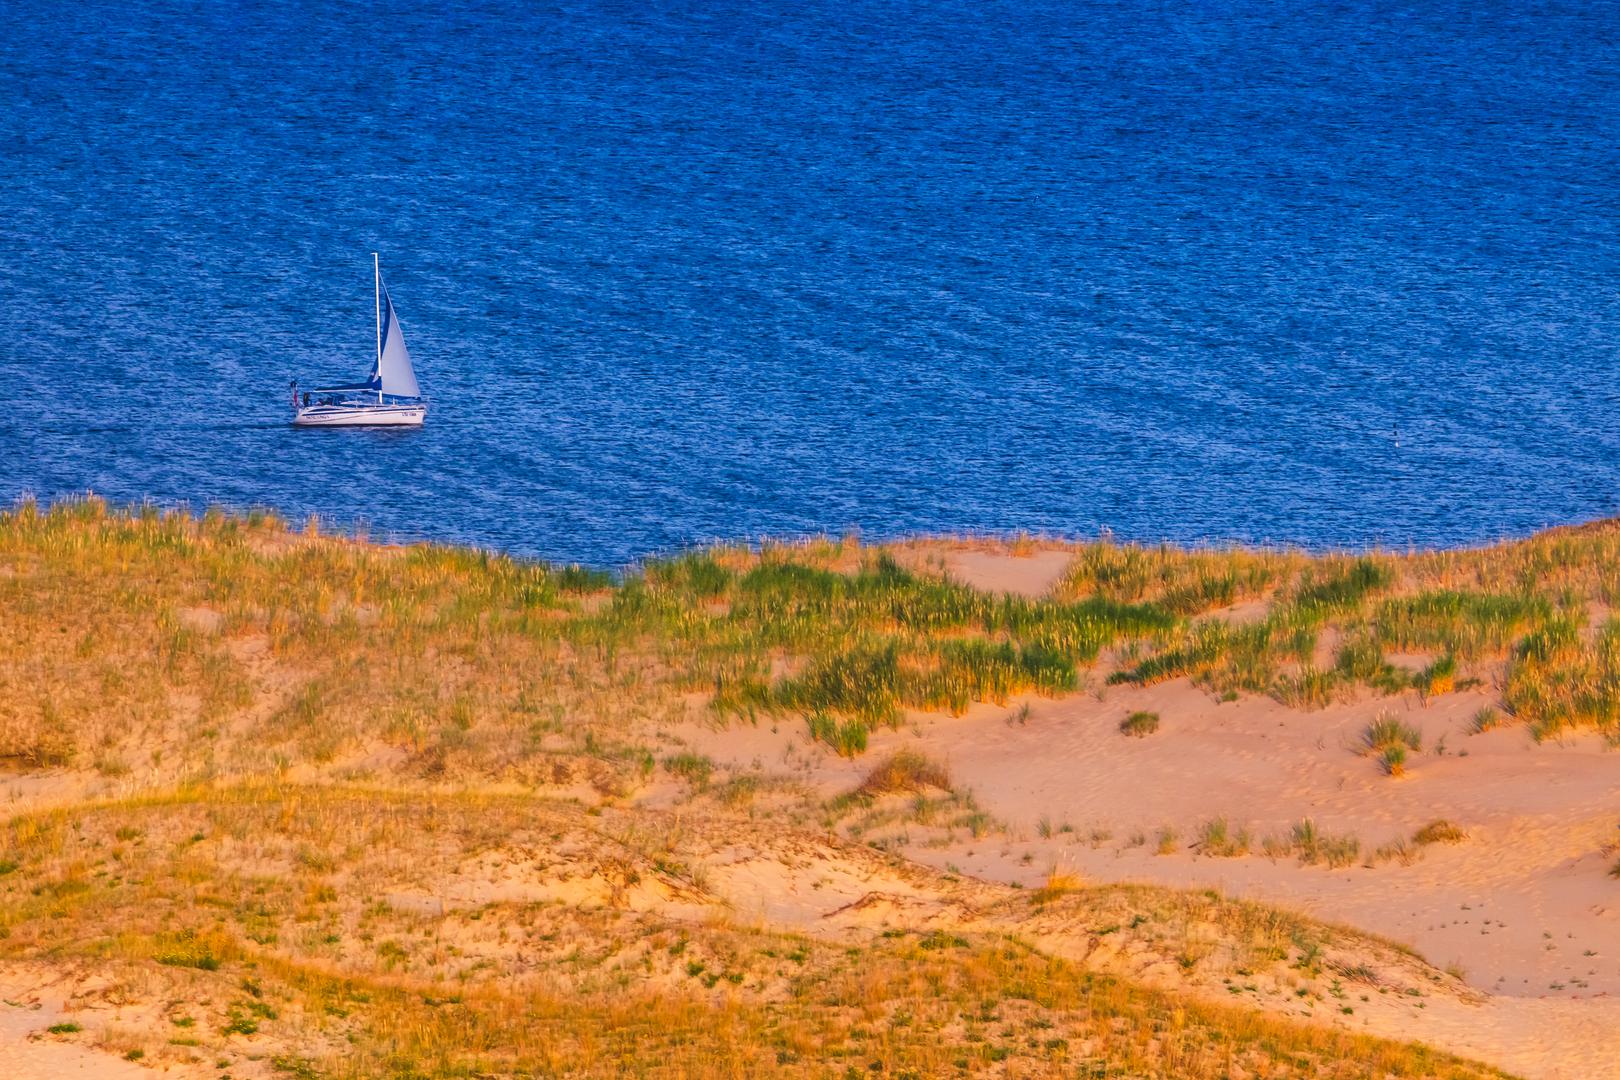 Nudistička plaža Nida, Litva: Prohladno Baltičko more možda se ne čini kao najočiglednije mjesto za kupanje. Ali, ovaj prekrasni pojas na dugoj, pješčanoj Kuršskoj prevlaci nudi jedno od najslikovitijih europskih mjesta gdje možete skinuti sve sa sebe. Sa svojim dinama prekrivenim divljim cvijećem (među najvišima u Europi) i obalnom šumom, plaža je bila središte umjetničke kolonije iz 19. stoljeća koja je privukla mnoge od vodećih slikara, pjesnika i pisaca tog vremena.